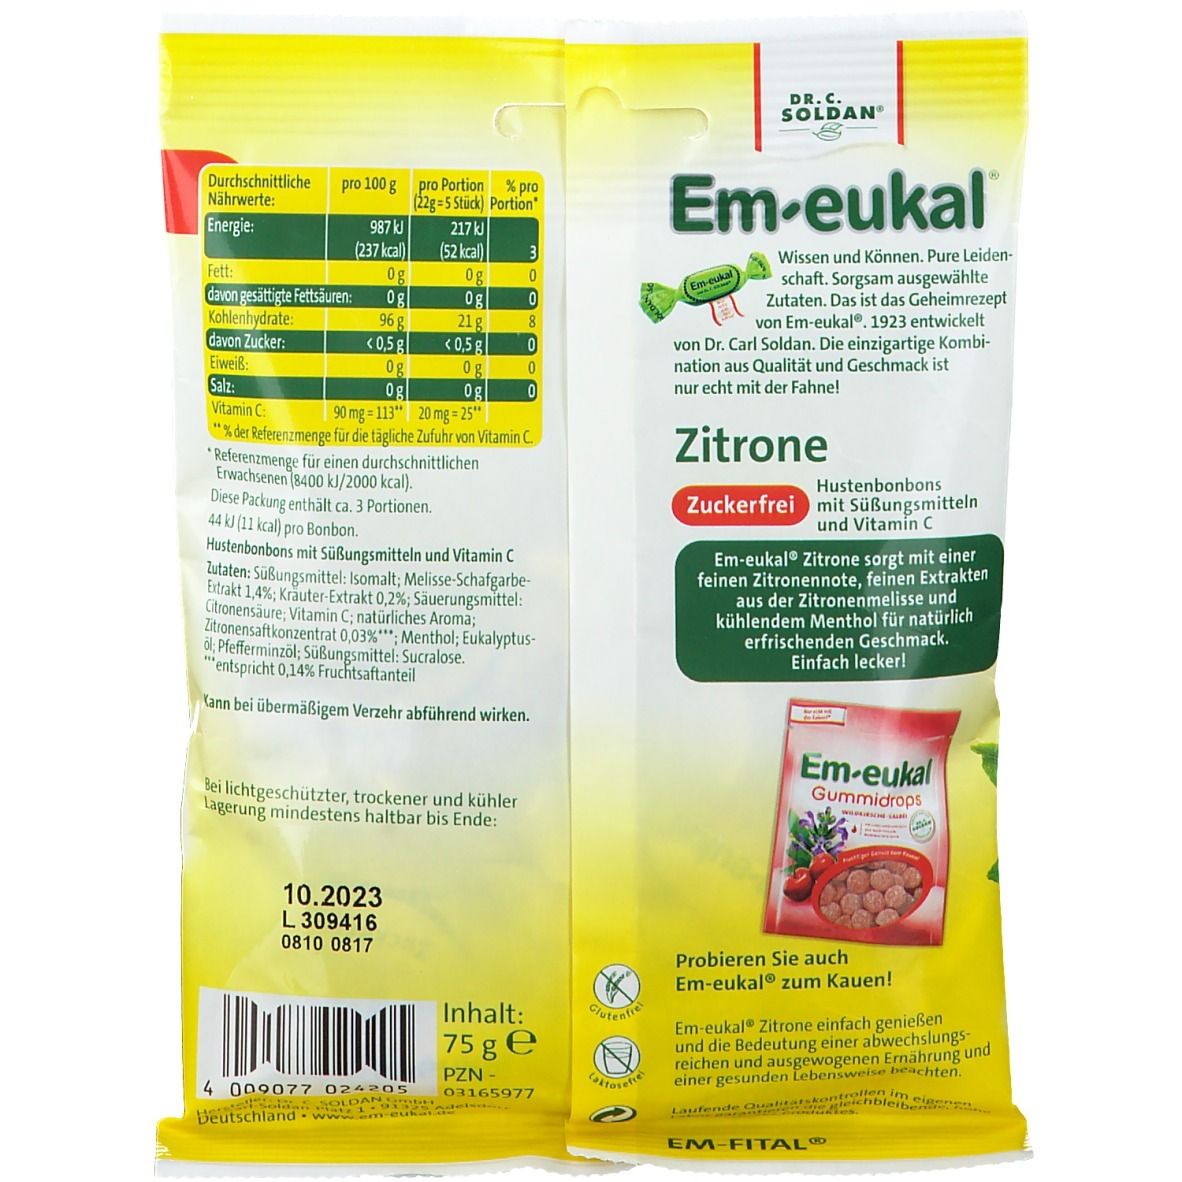 Em-eukal® Zitrone zuckerfrei